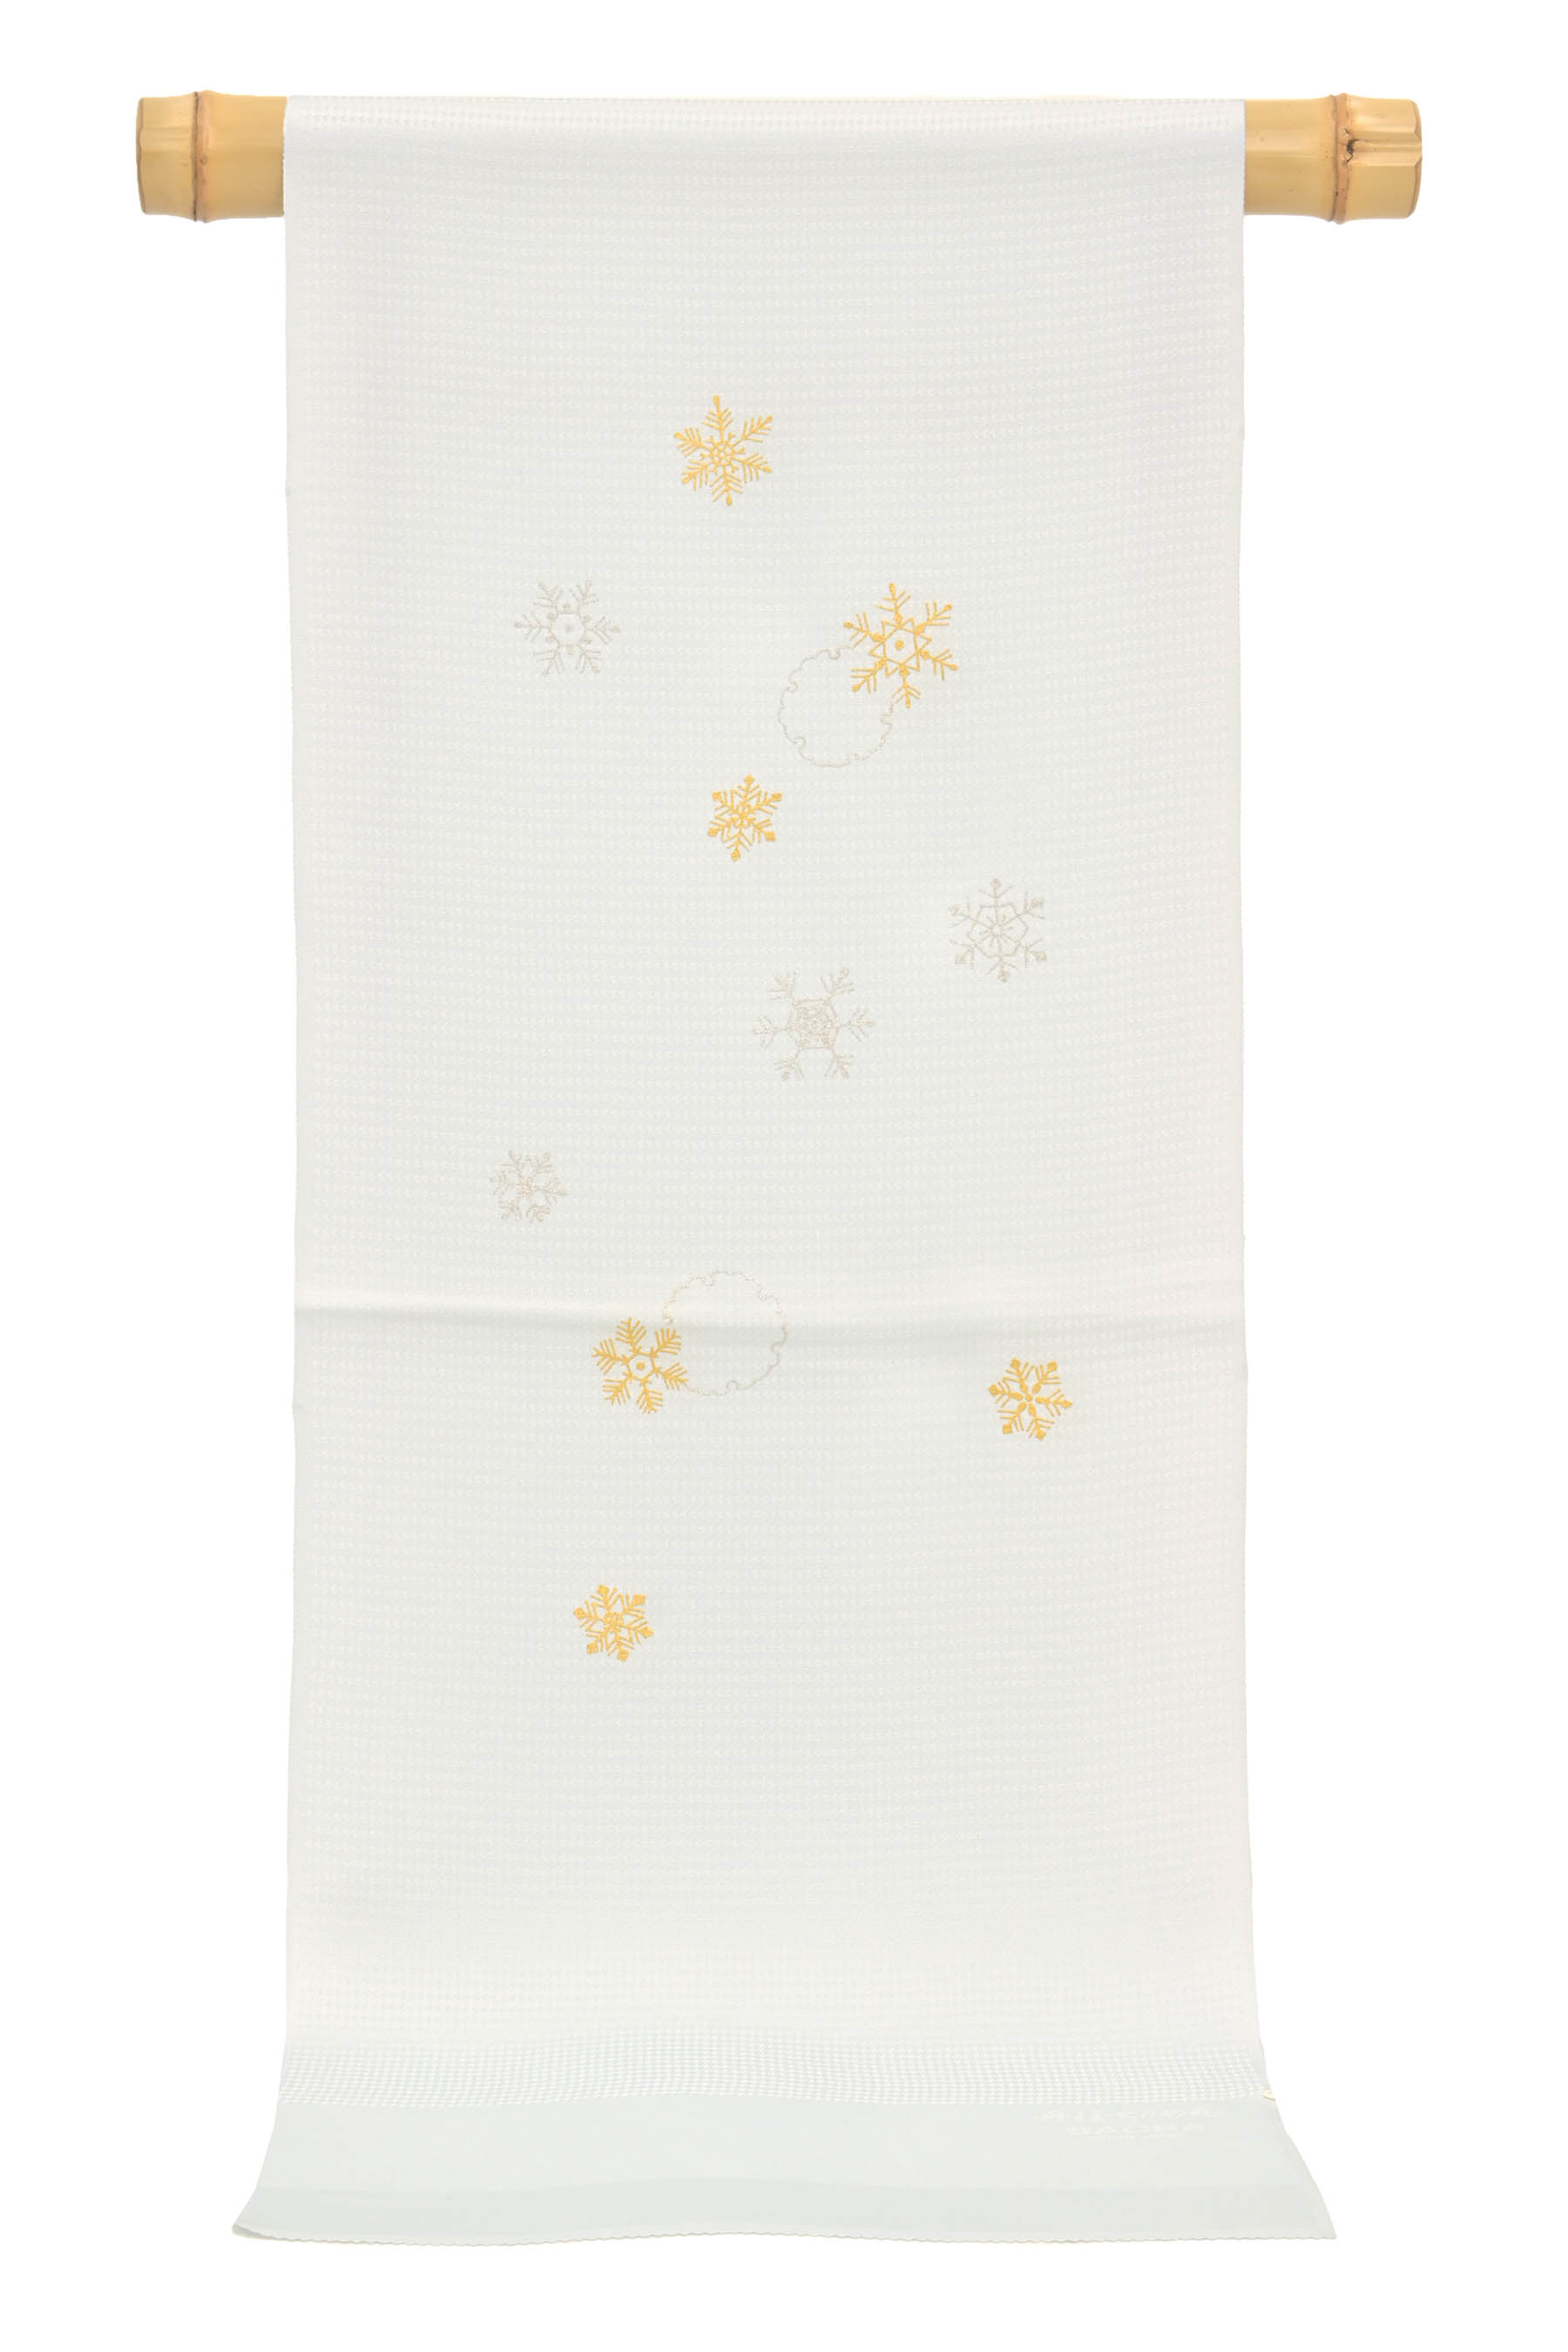 和小物さくら】 別織紋意匠地帯揚げ 雪の結晶 金銀箔 (03)ライトグレー